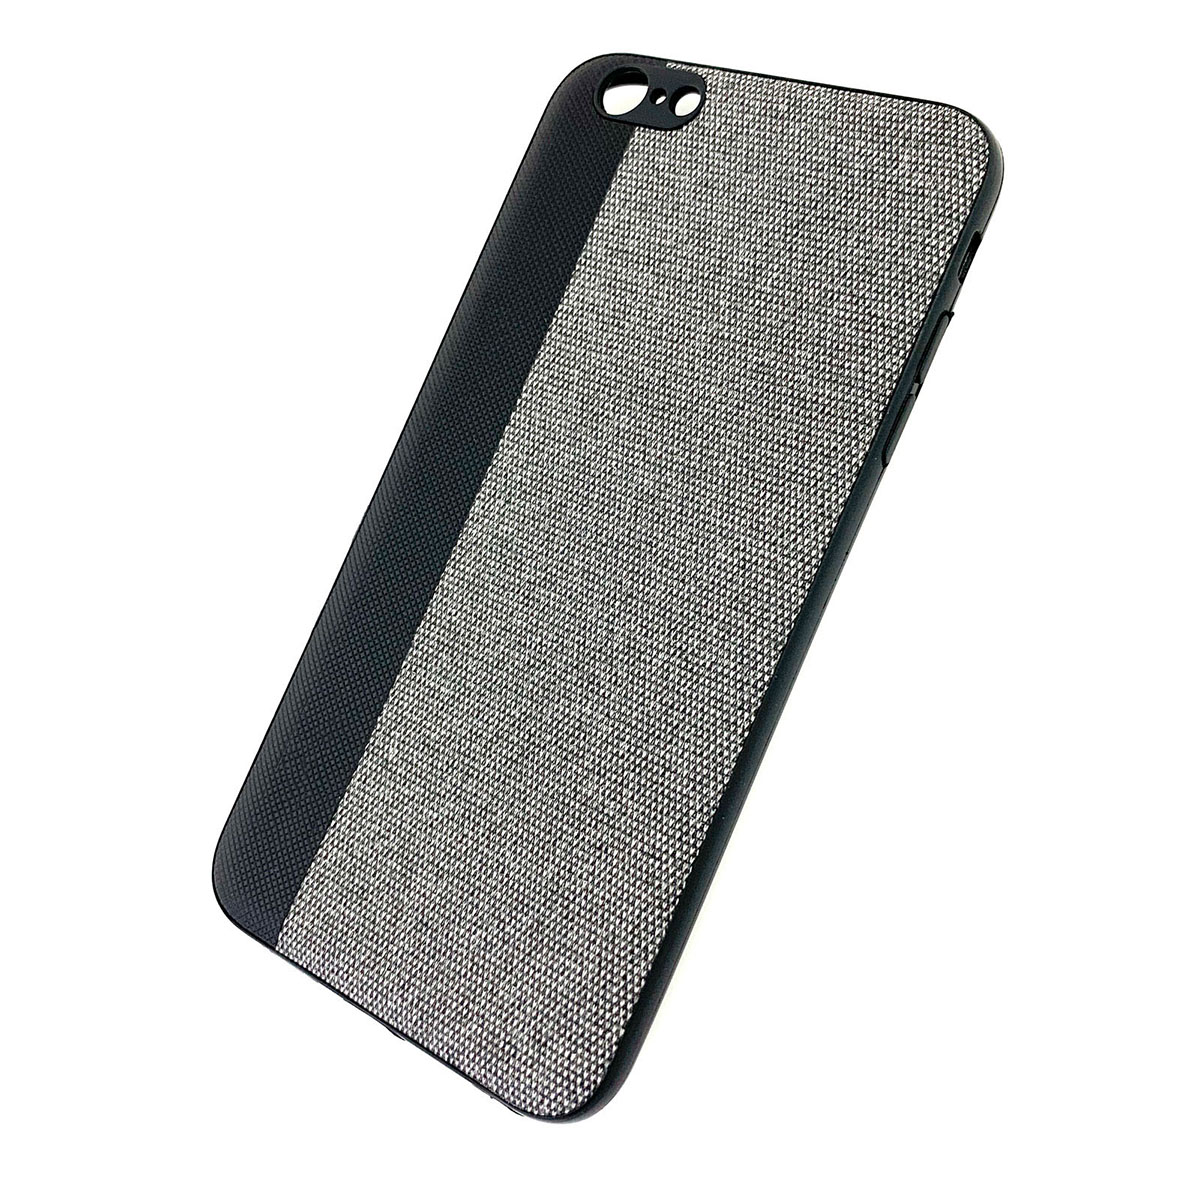 Чехол накладка для APPLE iPhone 6, iPhone 6S Plus, силикон, комбинированный, цвет черно серый.